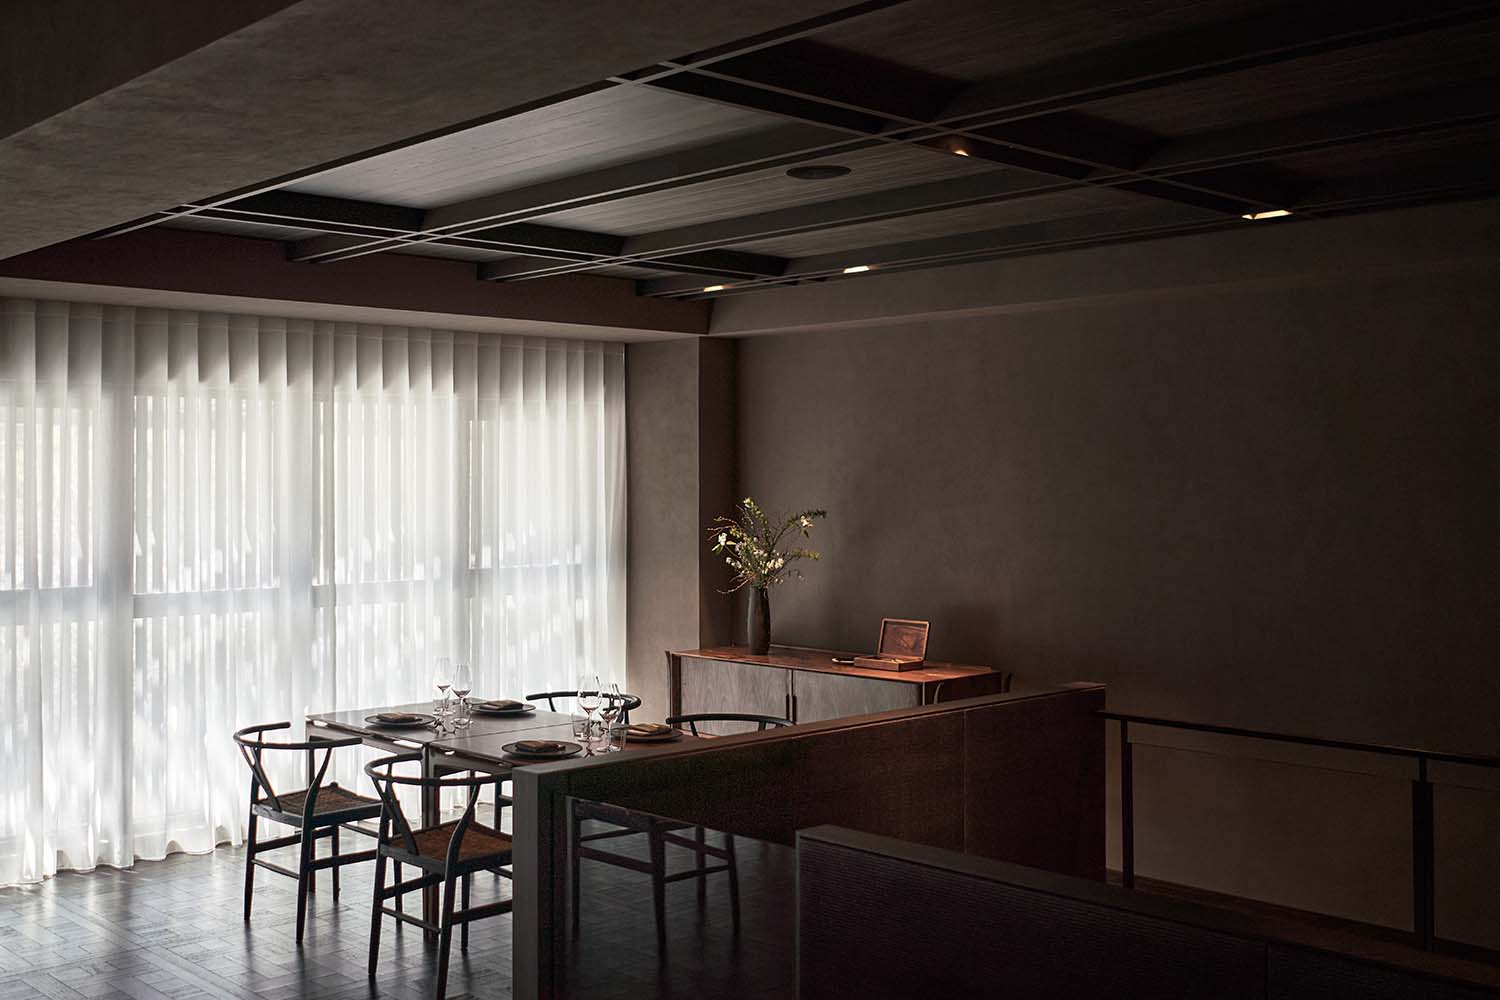 Banbo Taipei Restaurant Designed by Radius Interior Design Studio